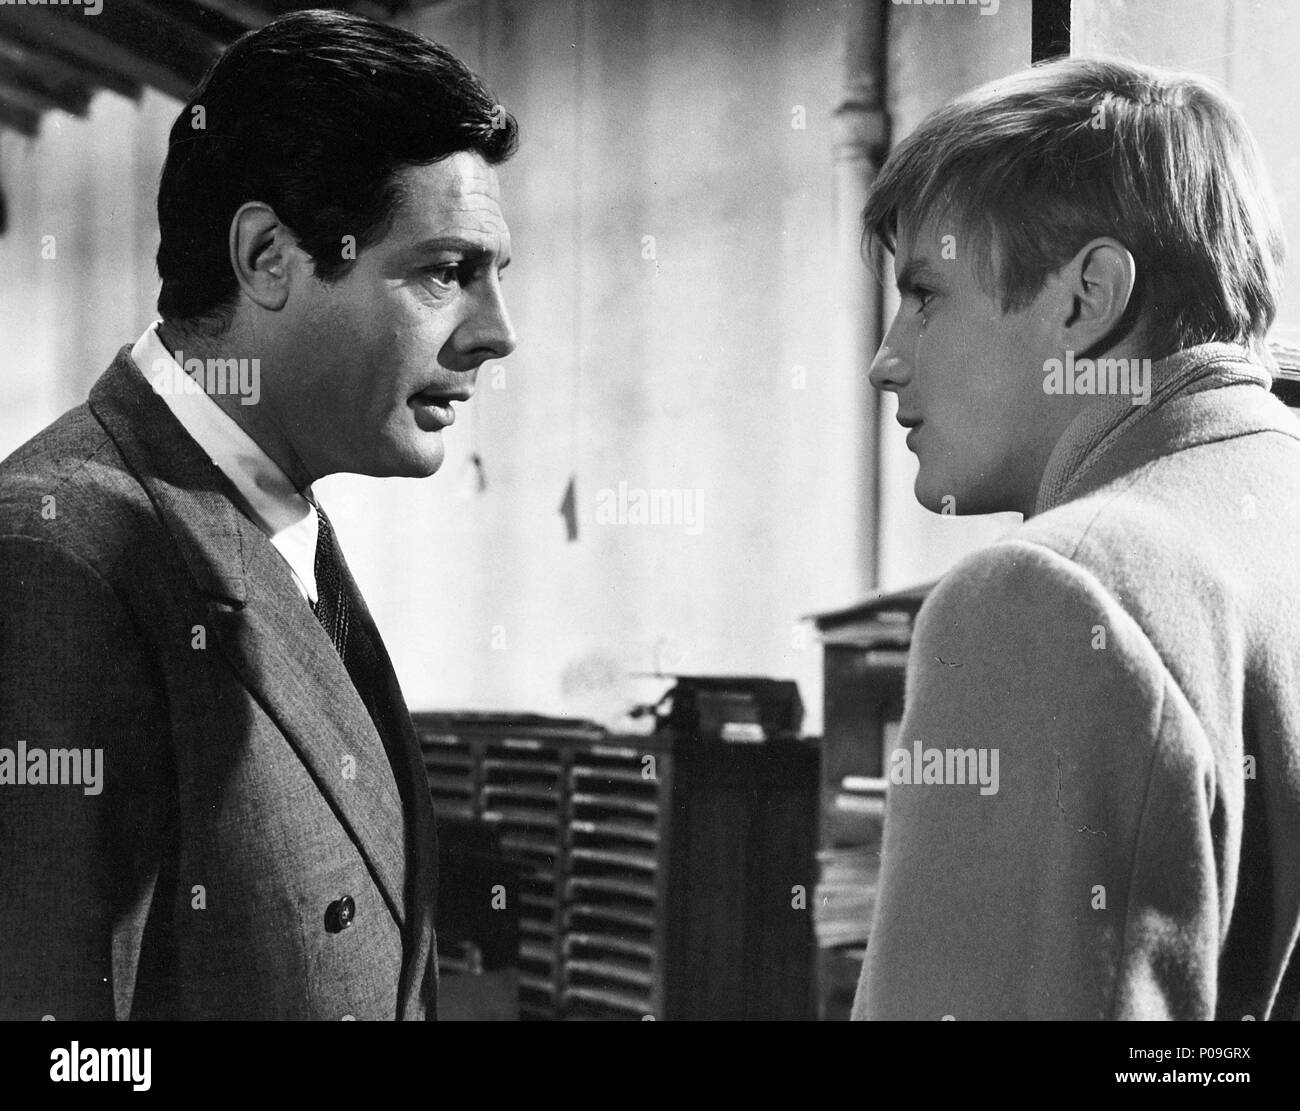 Original Film Title: CRONACA FAMILIARE.  English Title: FAMILY DIARY.  Film Director: VALERIO ZURLINI.  Year: 1962.  Stars: MARCELLO MASTROIANNI; JACQUES PERRIN. Stock Photo